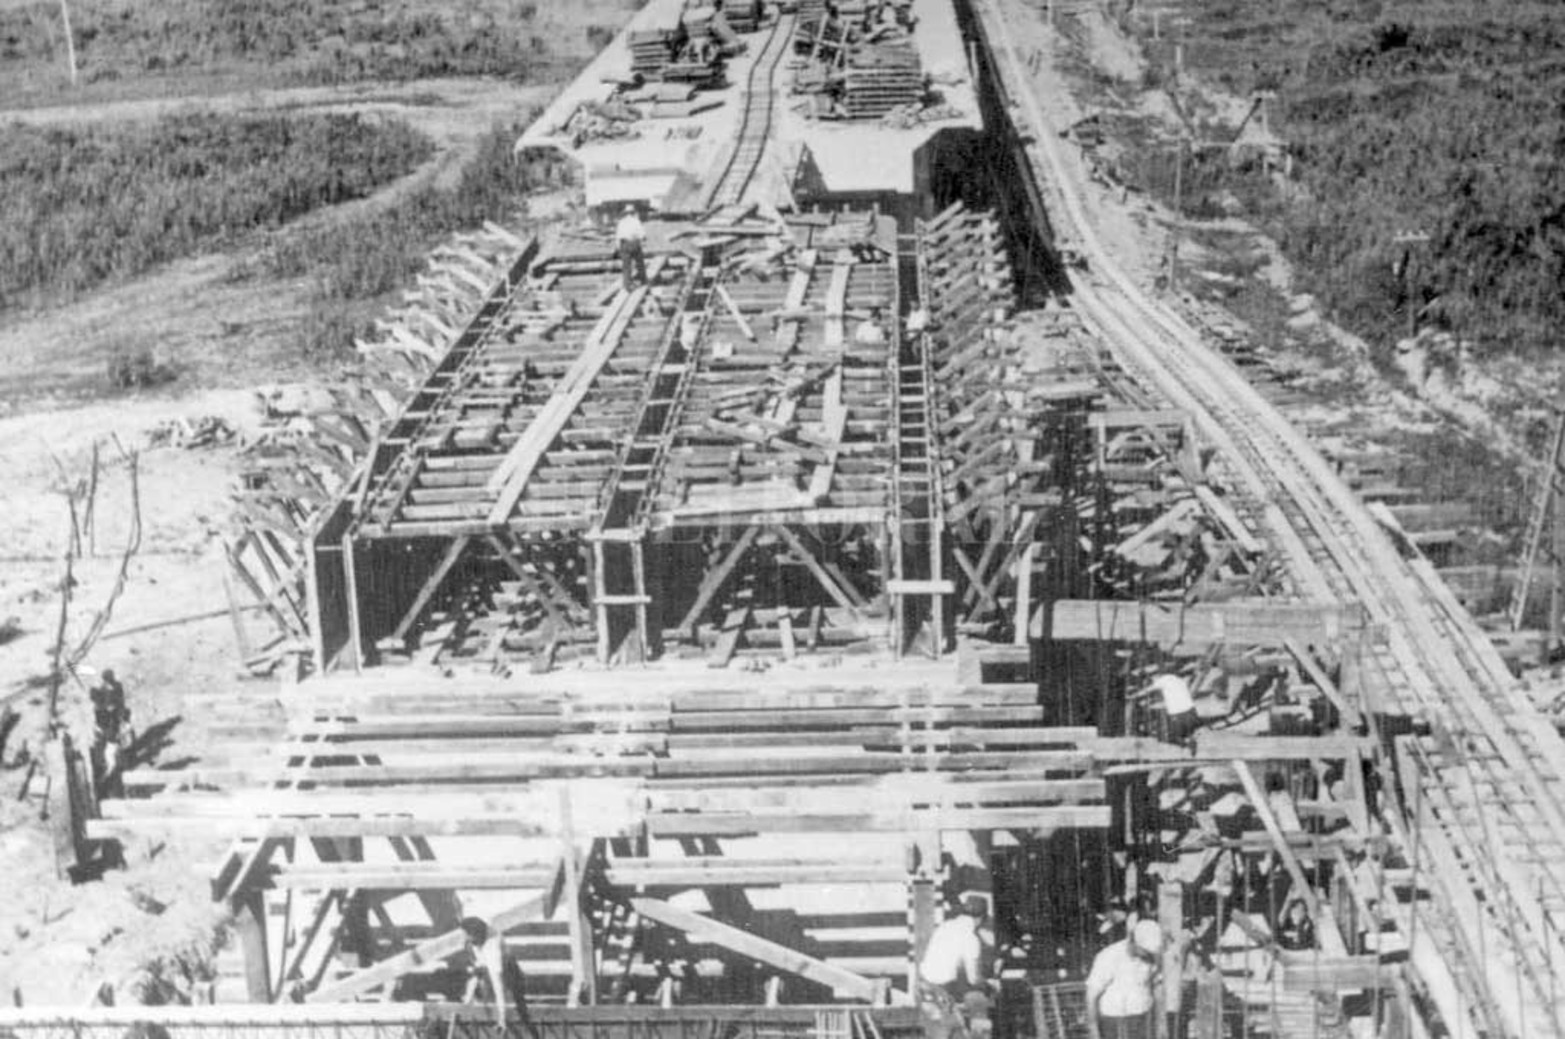 Fácil traslado: Para el transporte de materiales y otros elementos de utilidad para la construcción del puente, se ideó un sistema de vías que facilitaba esta labor.